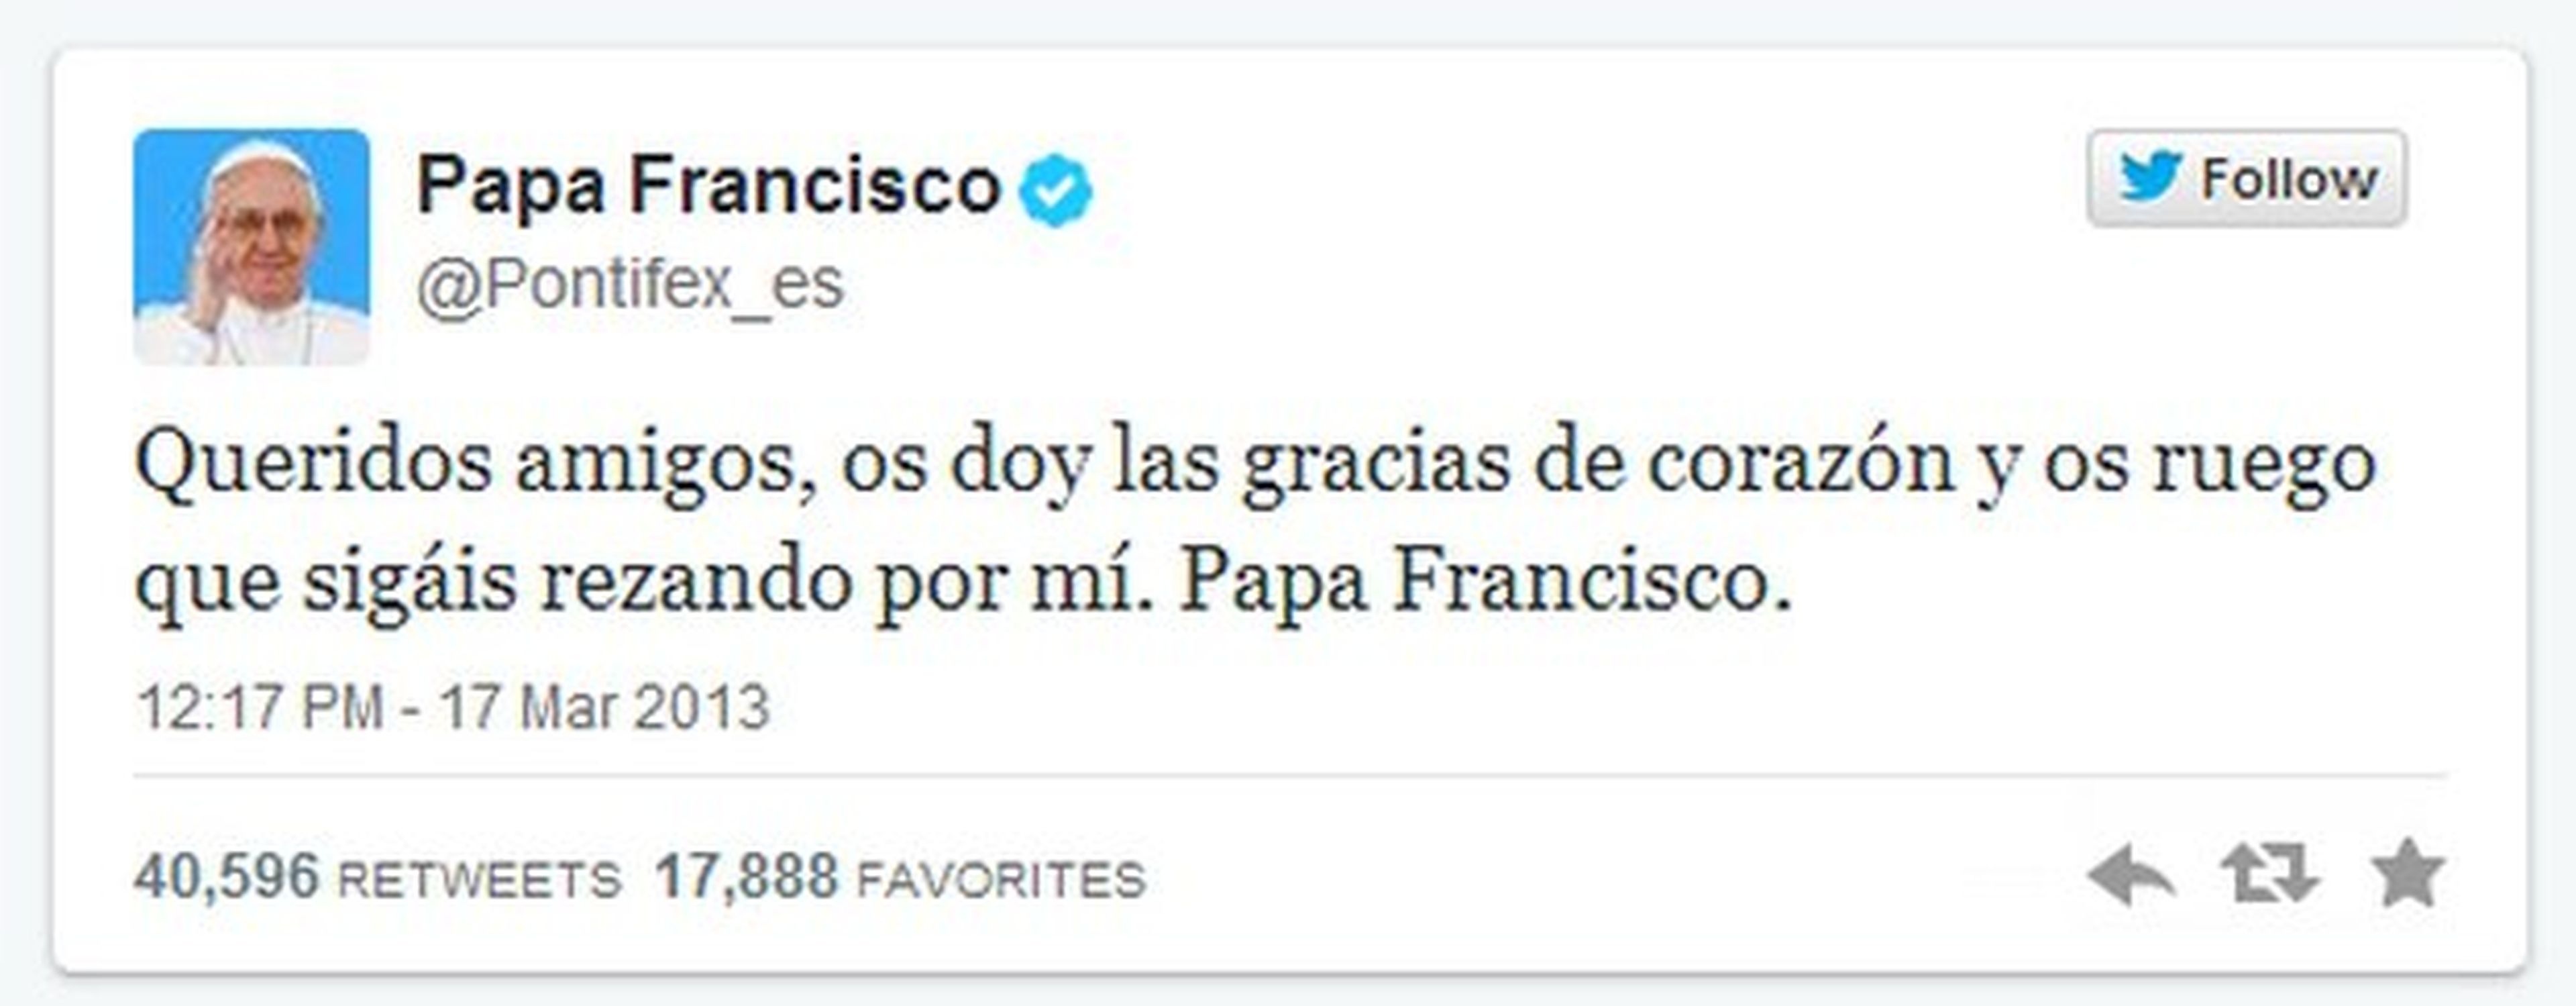 Primer Tweet Papa Francisco